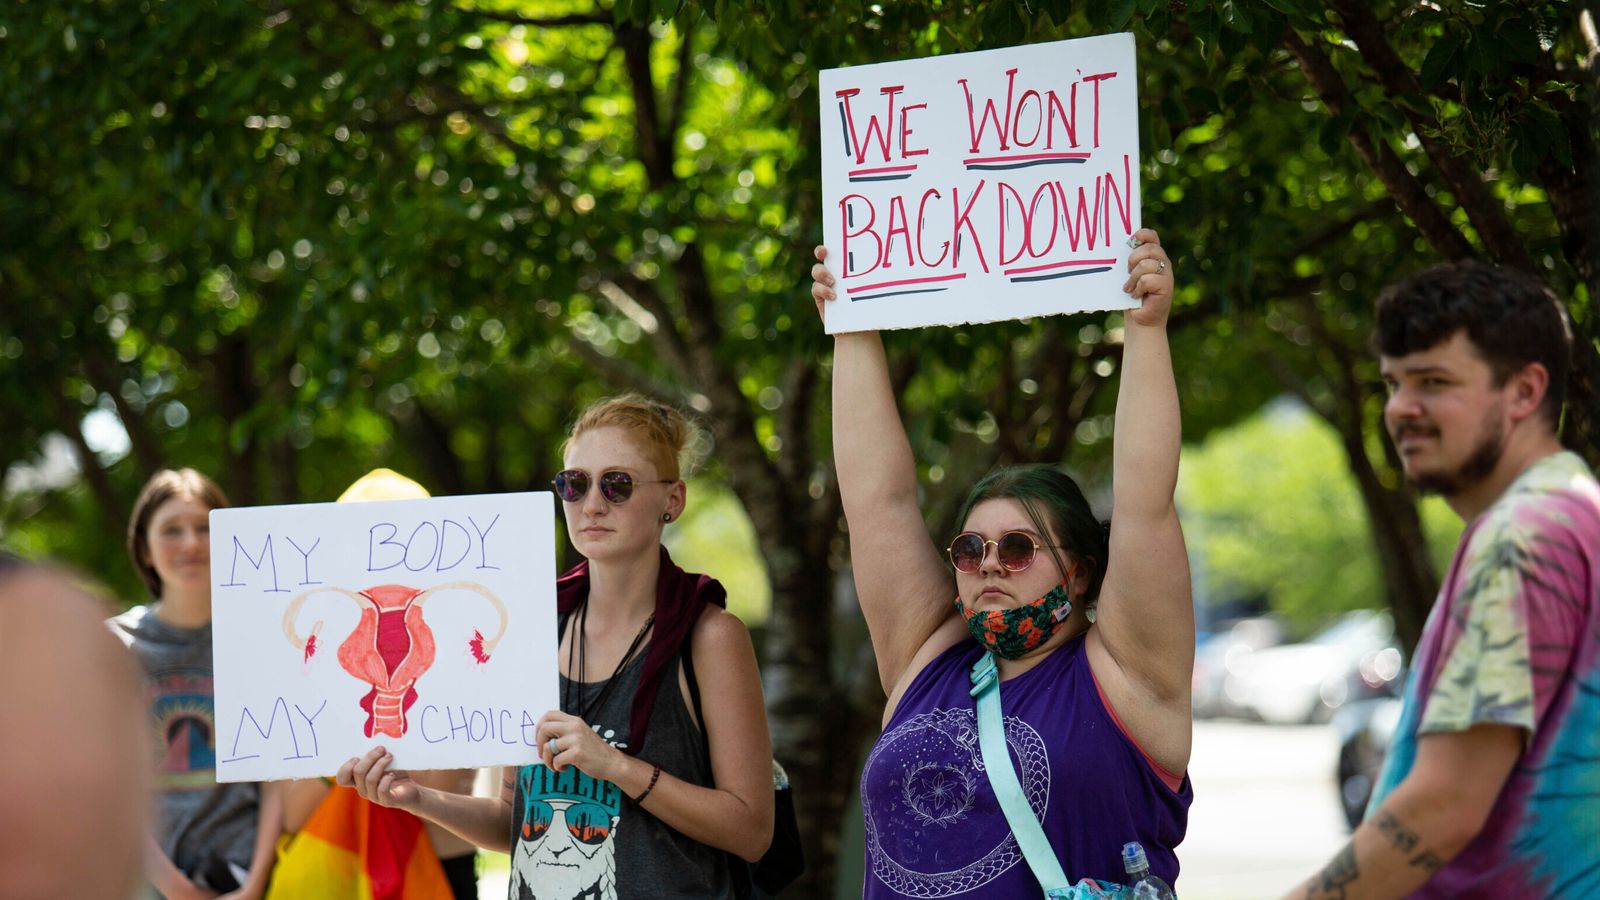 Un juge américain empêche le Kentucky d’imposer une interdiction presque complète de l’avortement après la décision Roe v Wade |  Nouvelles américaines